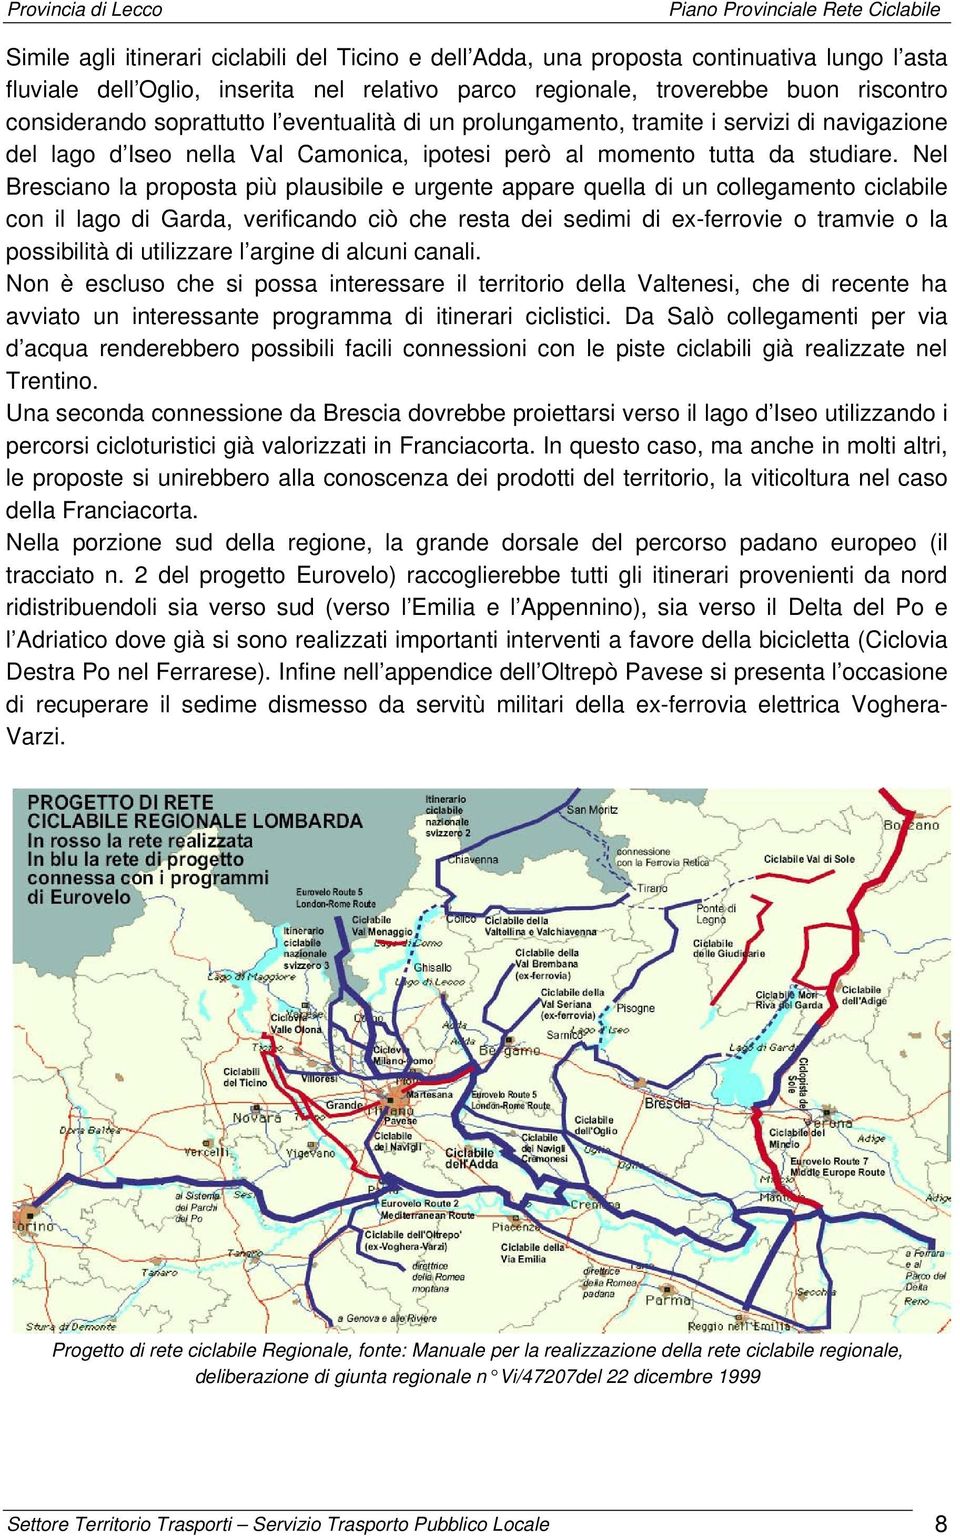 Nel Bresciano la proposta più plausibile e urgente appare quella di un collegamento ciclabile con il lago di Garda, verificando ciò che resta dei sedimi di ex-ferrovie o tramvie o la possibilità di